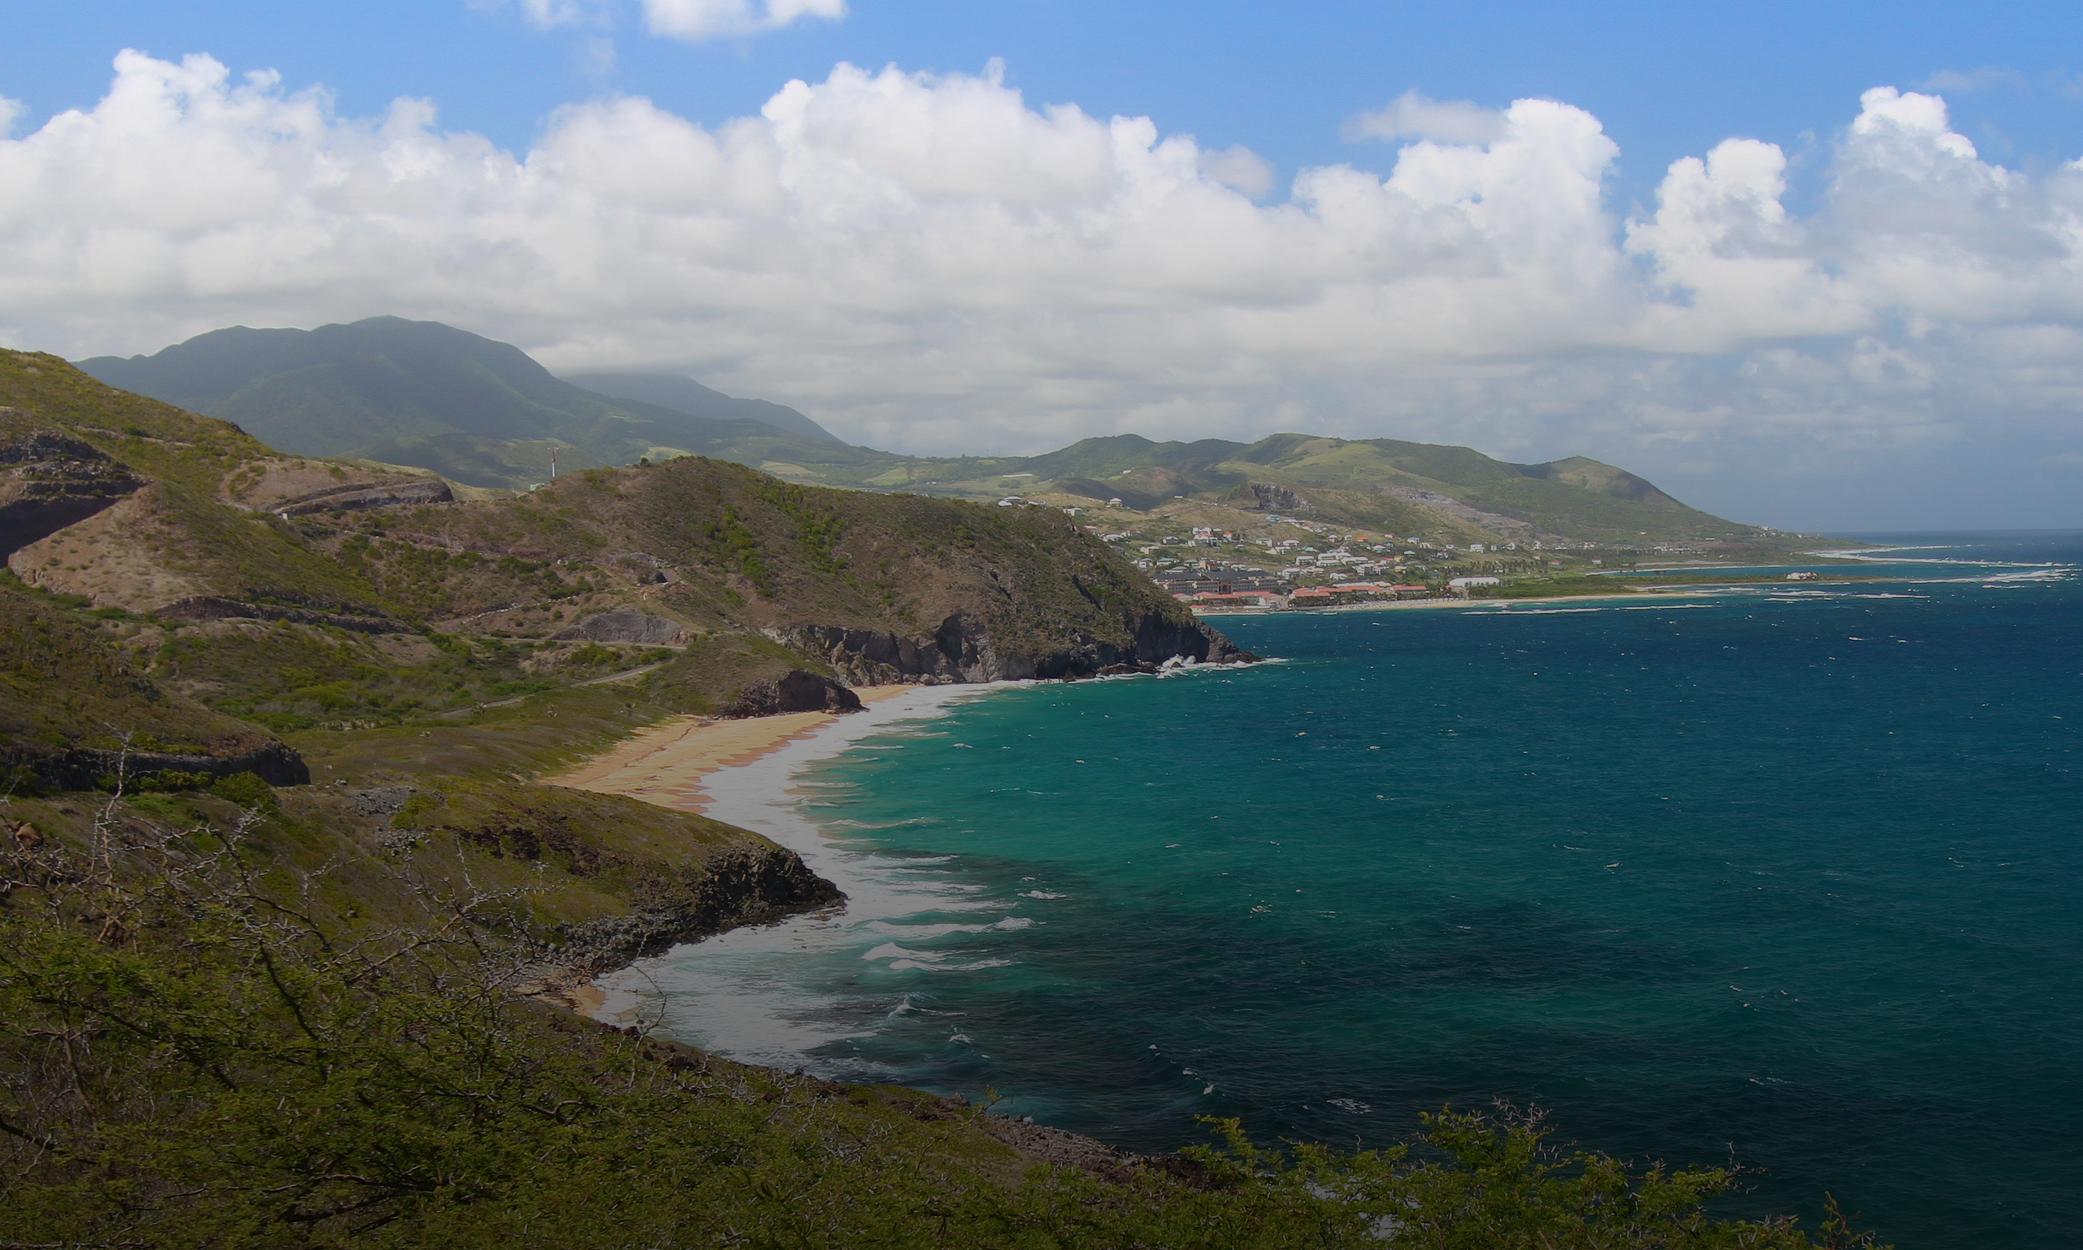 Le prix de la citoyenneté de Saint-Kitts-et-Nevis par investissement double